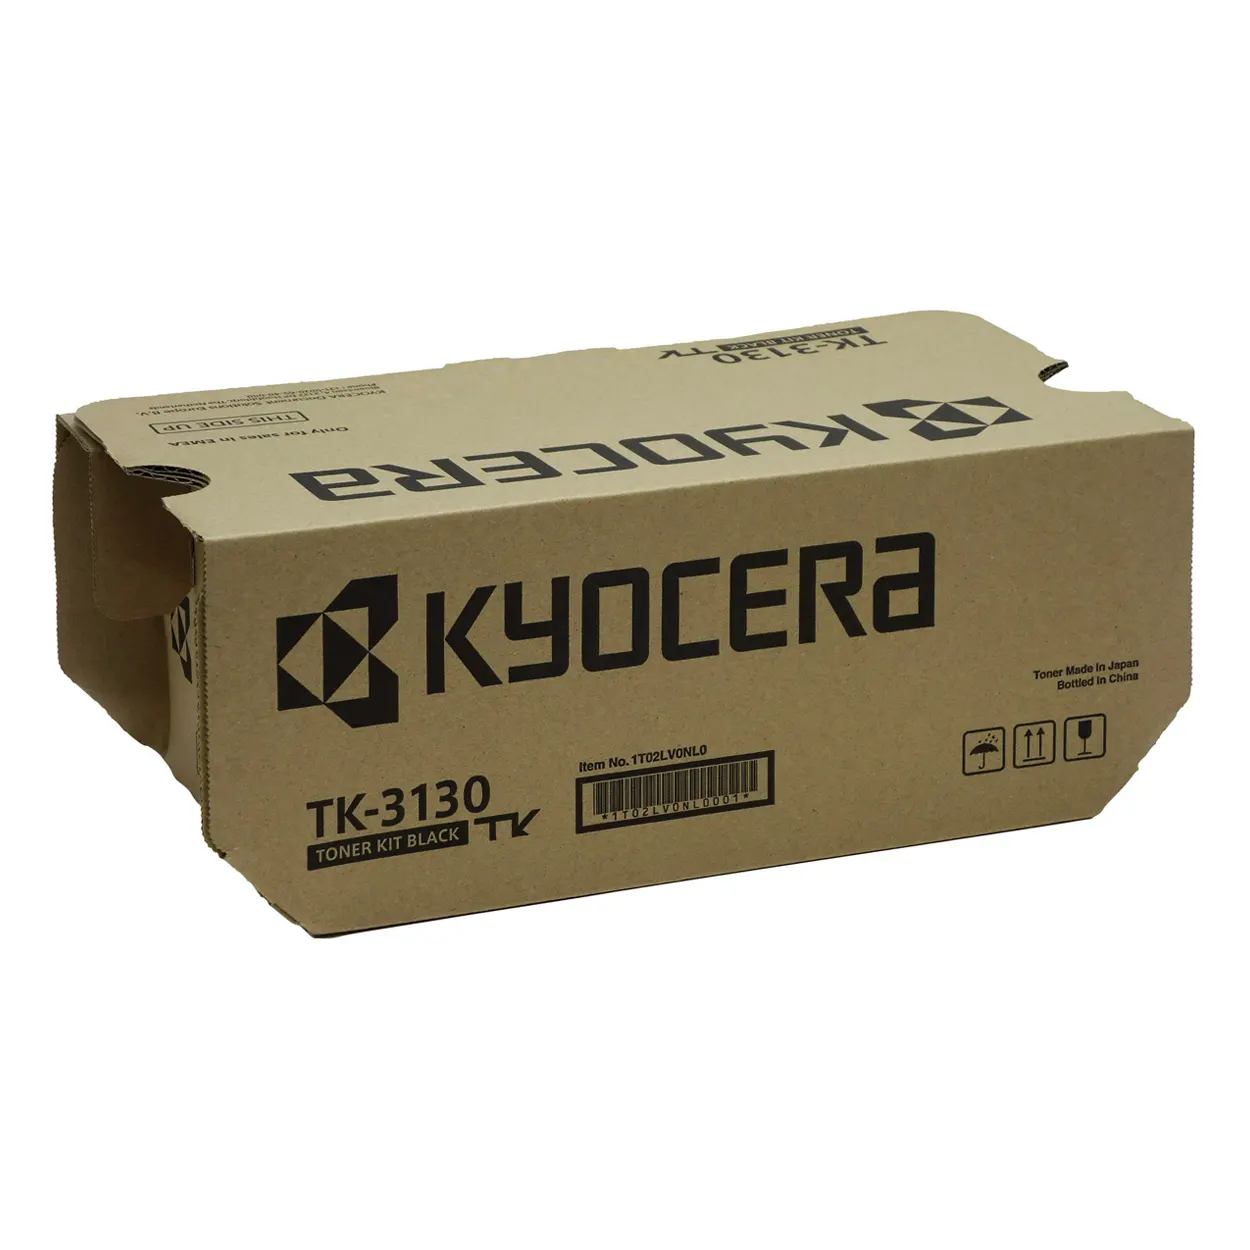 Kyocera TK-3130 Toner Original